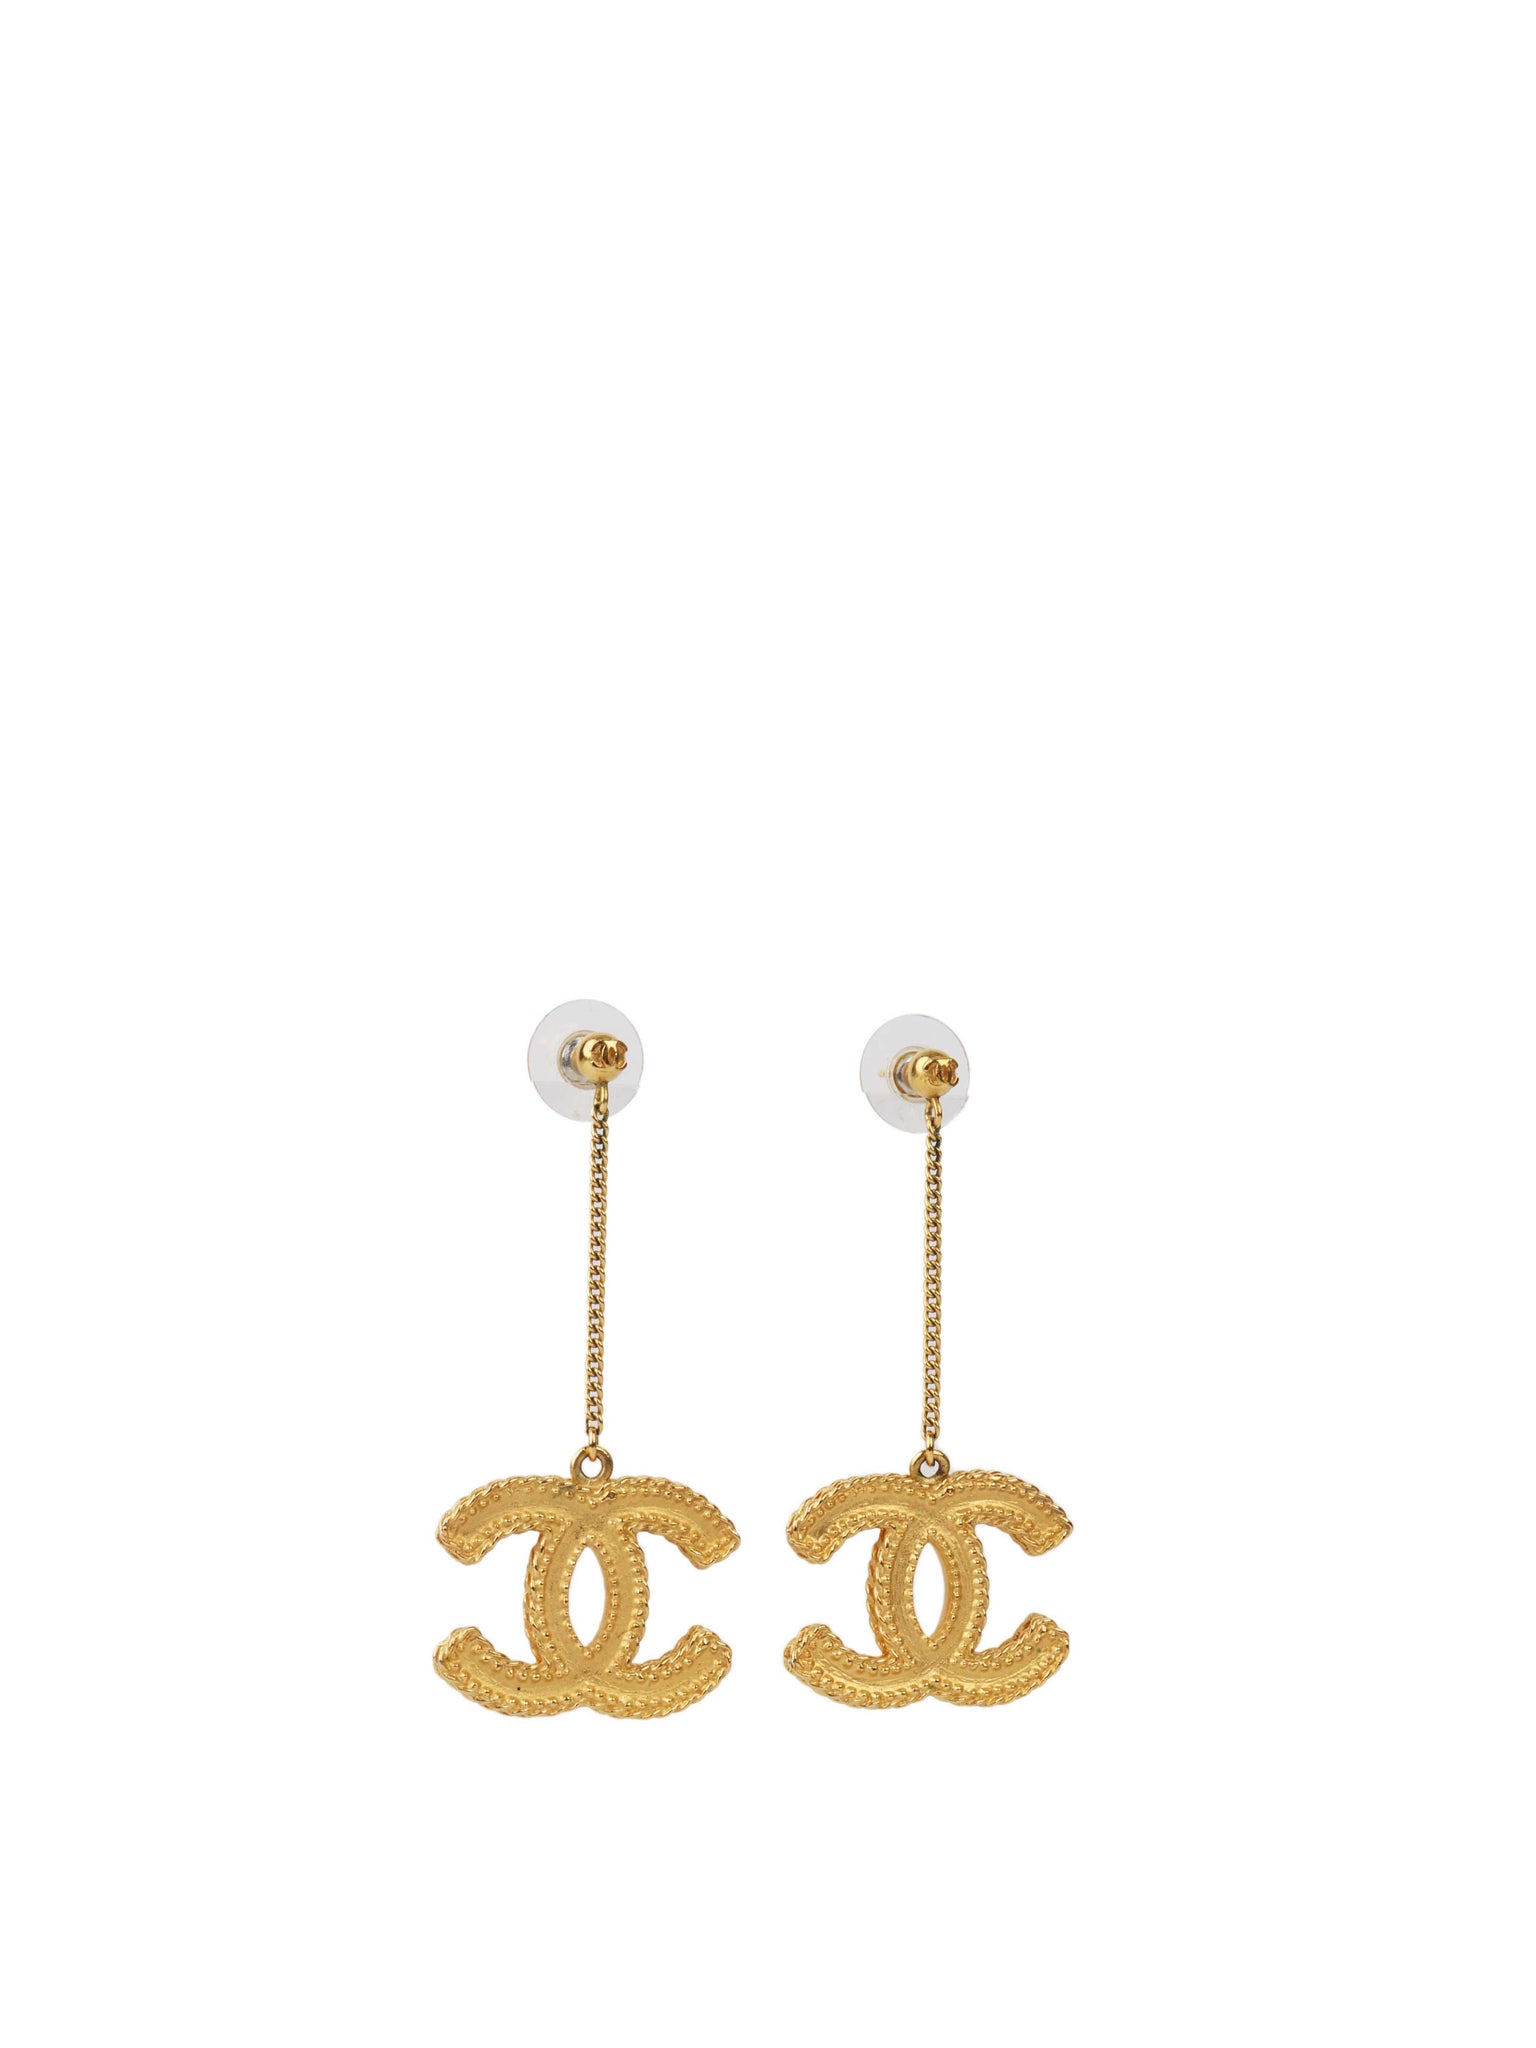 Chanel Gold Metal CC Drop Earrings, 2014